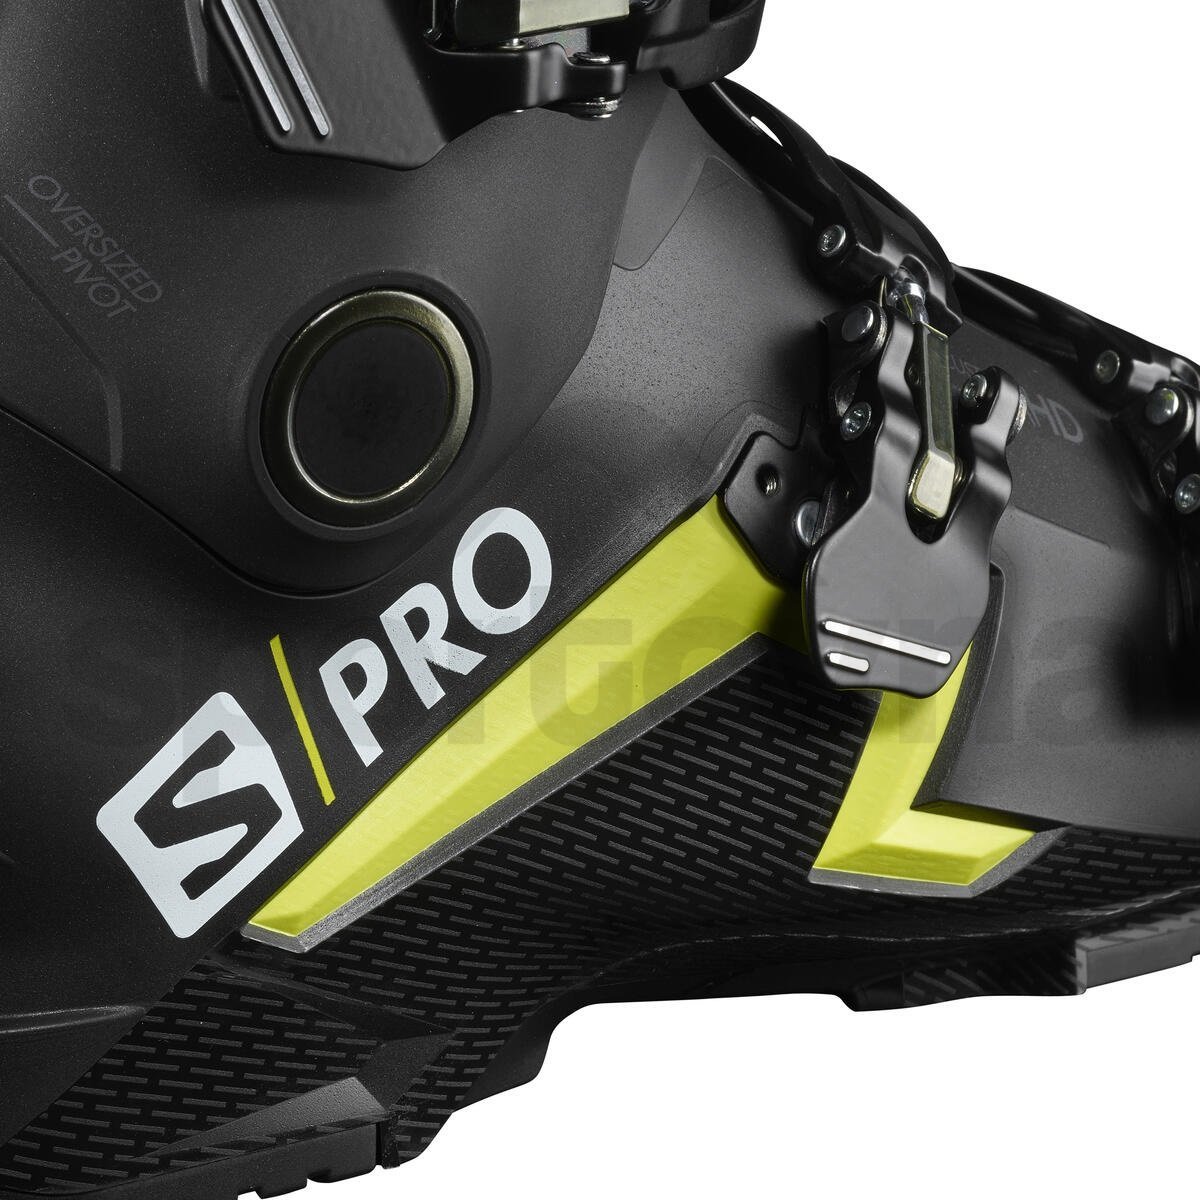 Lyžařské boty Salomon S/Pro 110 Black M - černá/žlutá